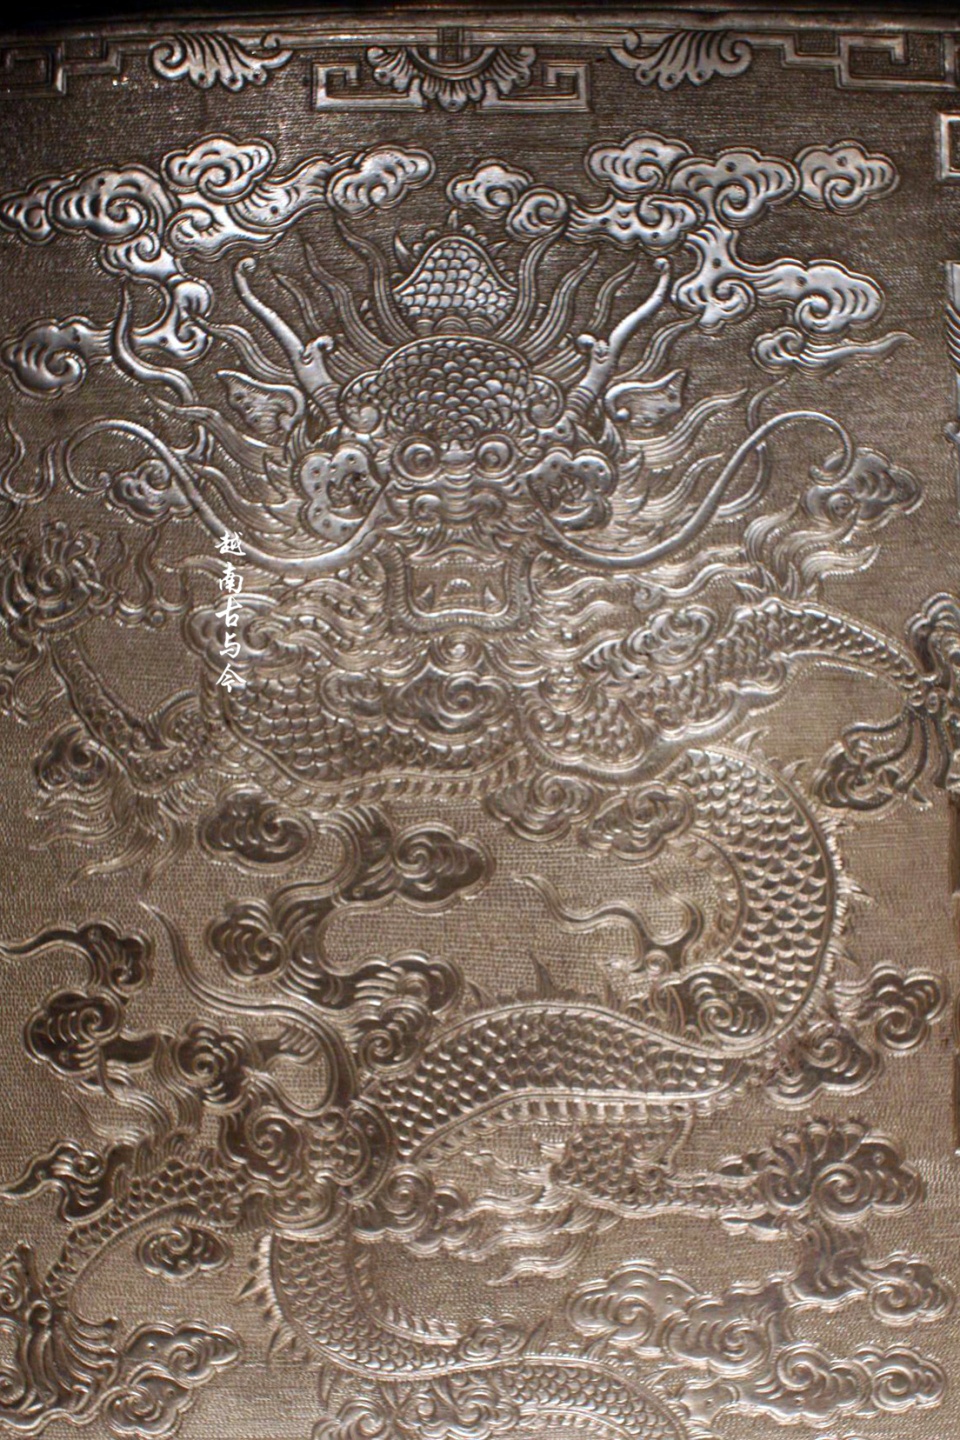 越南国家历史博物馆藏阮朝龙形文物:凸显皇家威严,造型十分精美